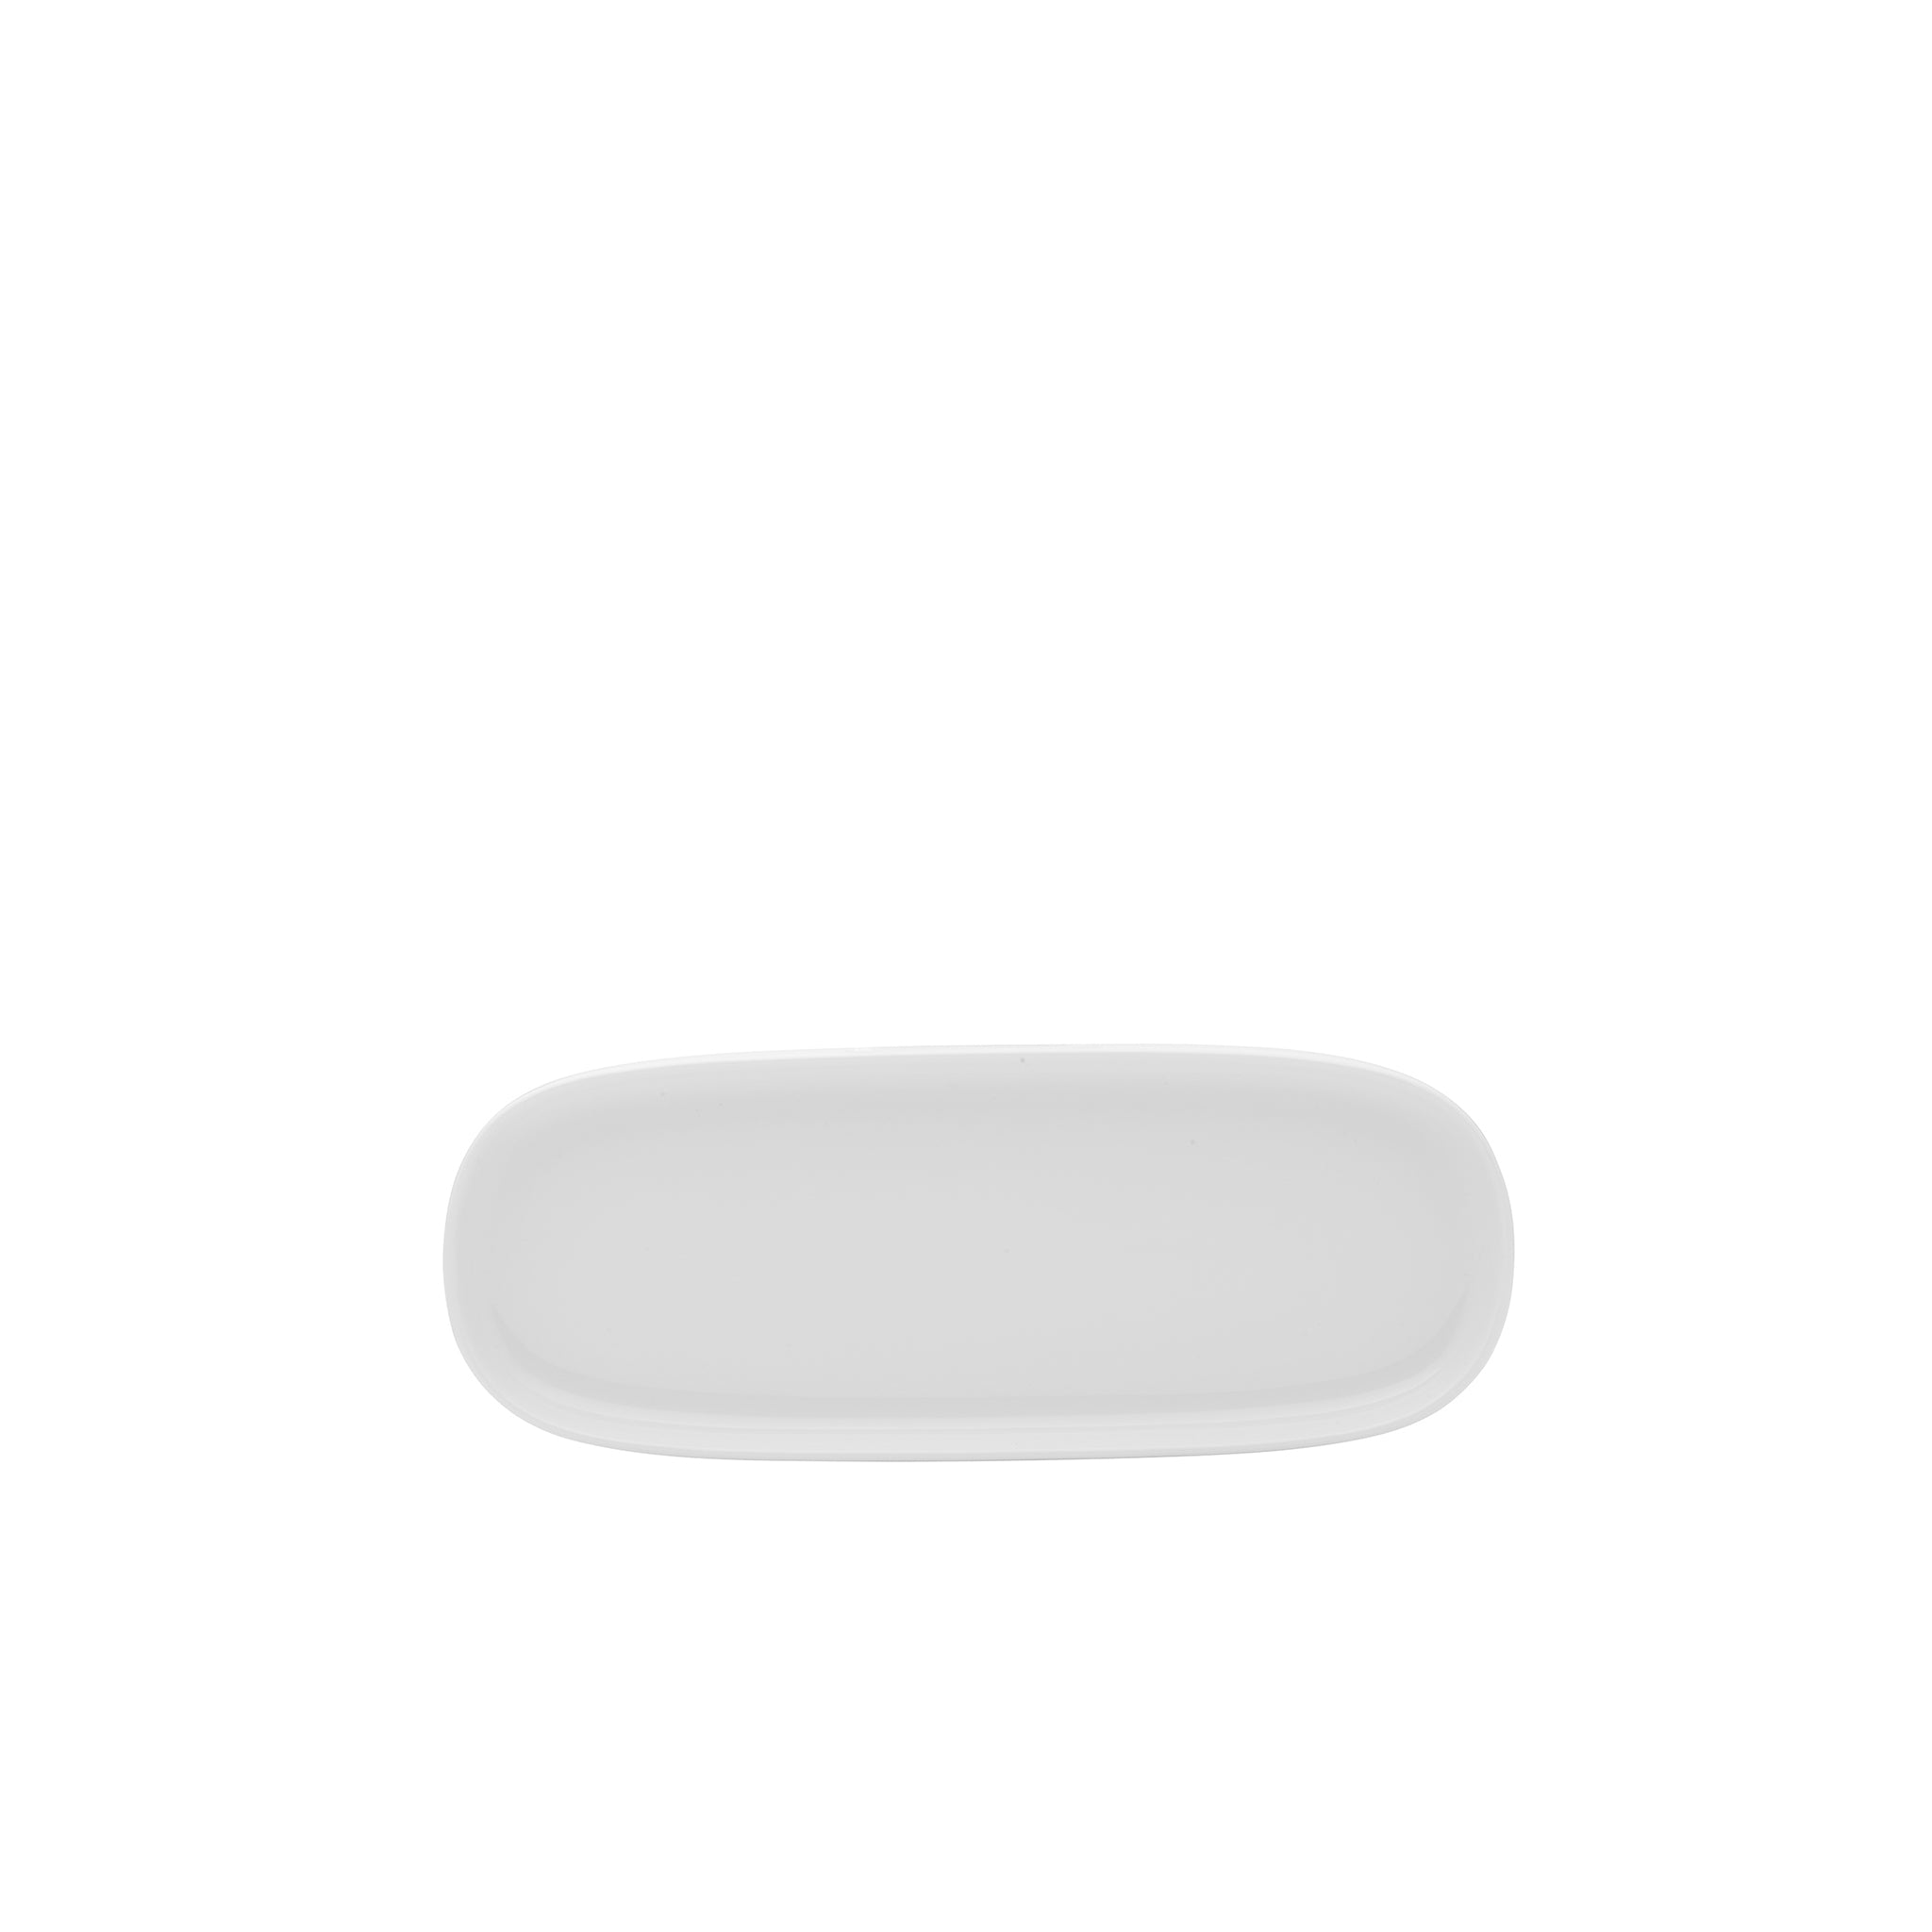 Isla Porcelain Rectangular Platter 12x4" Bright White